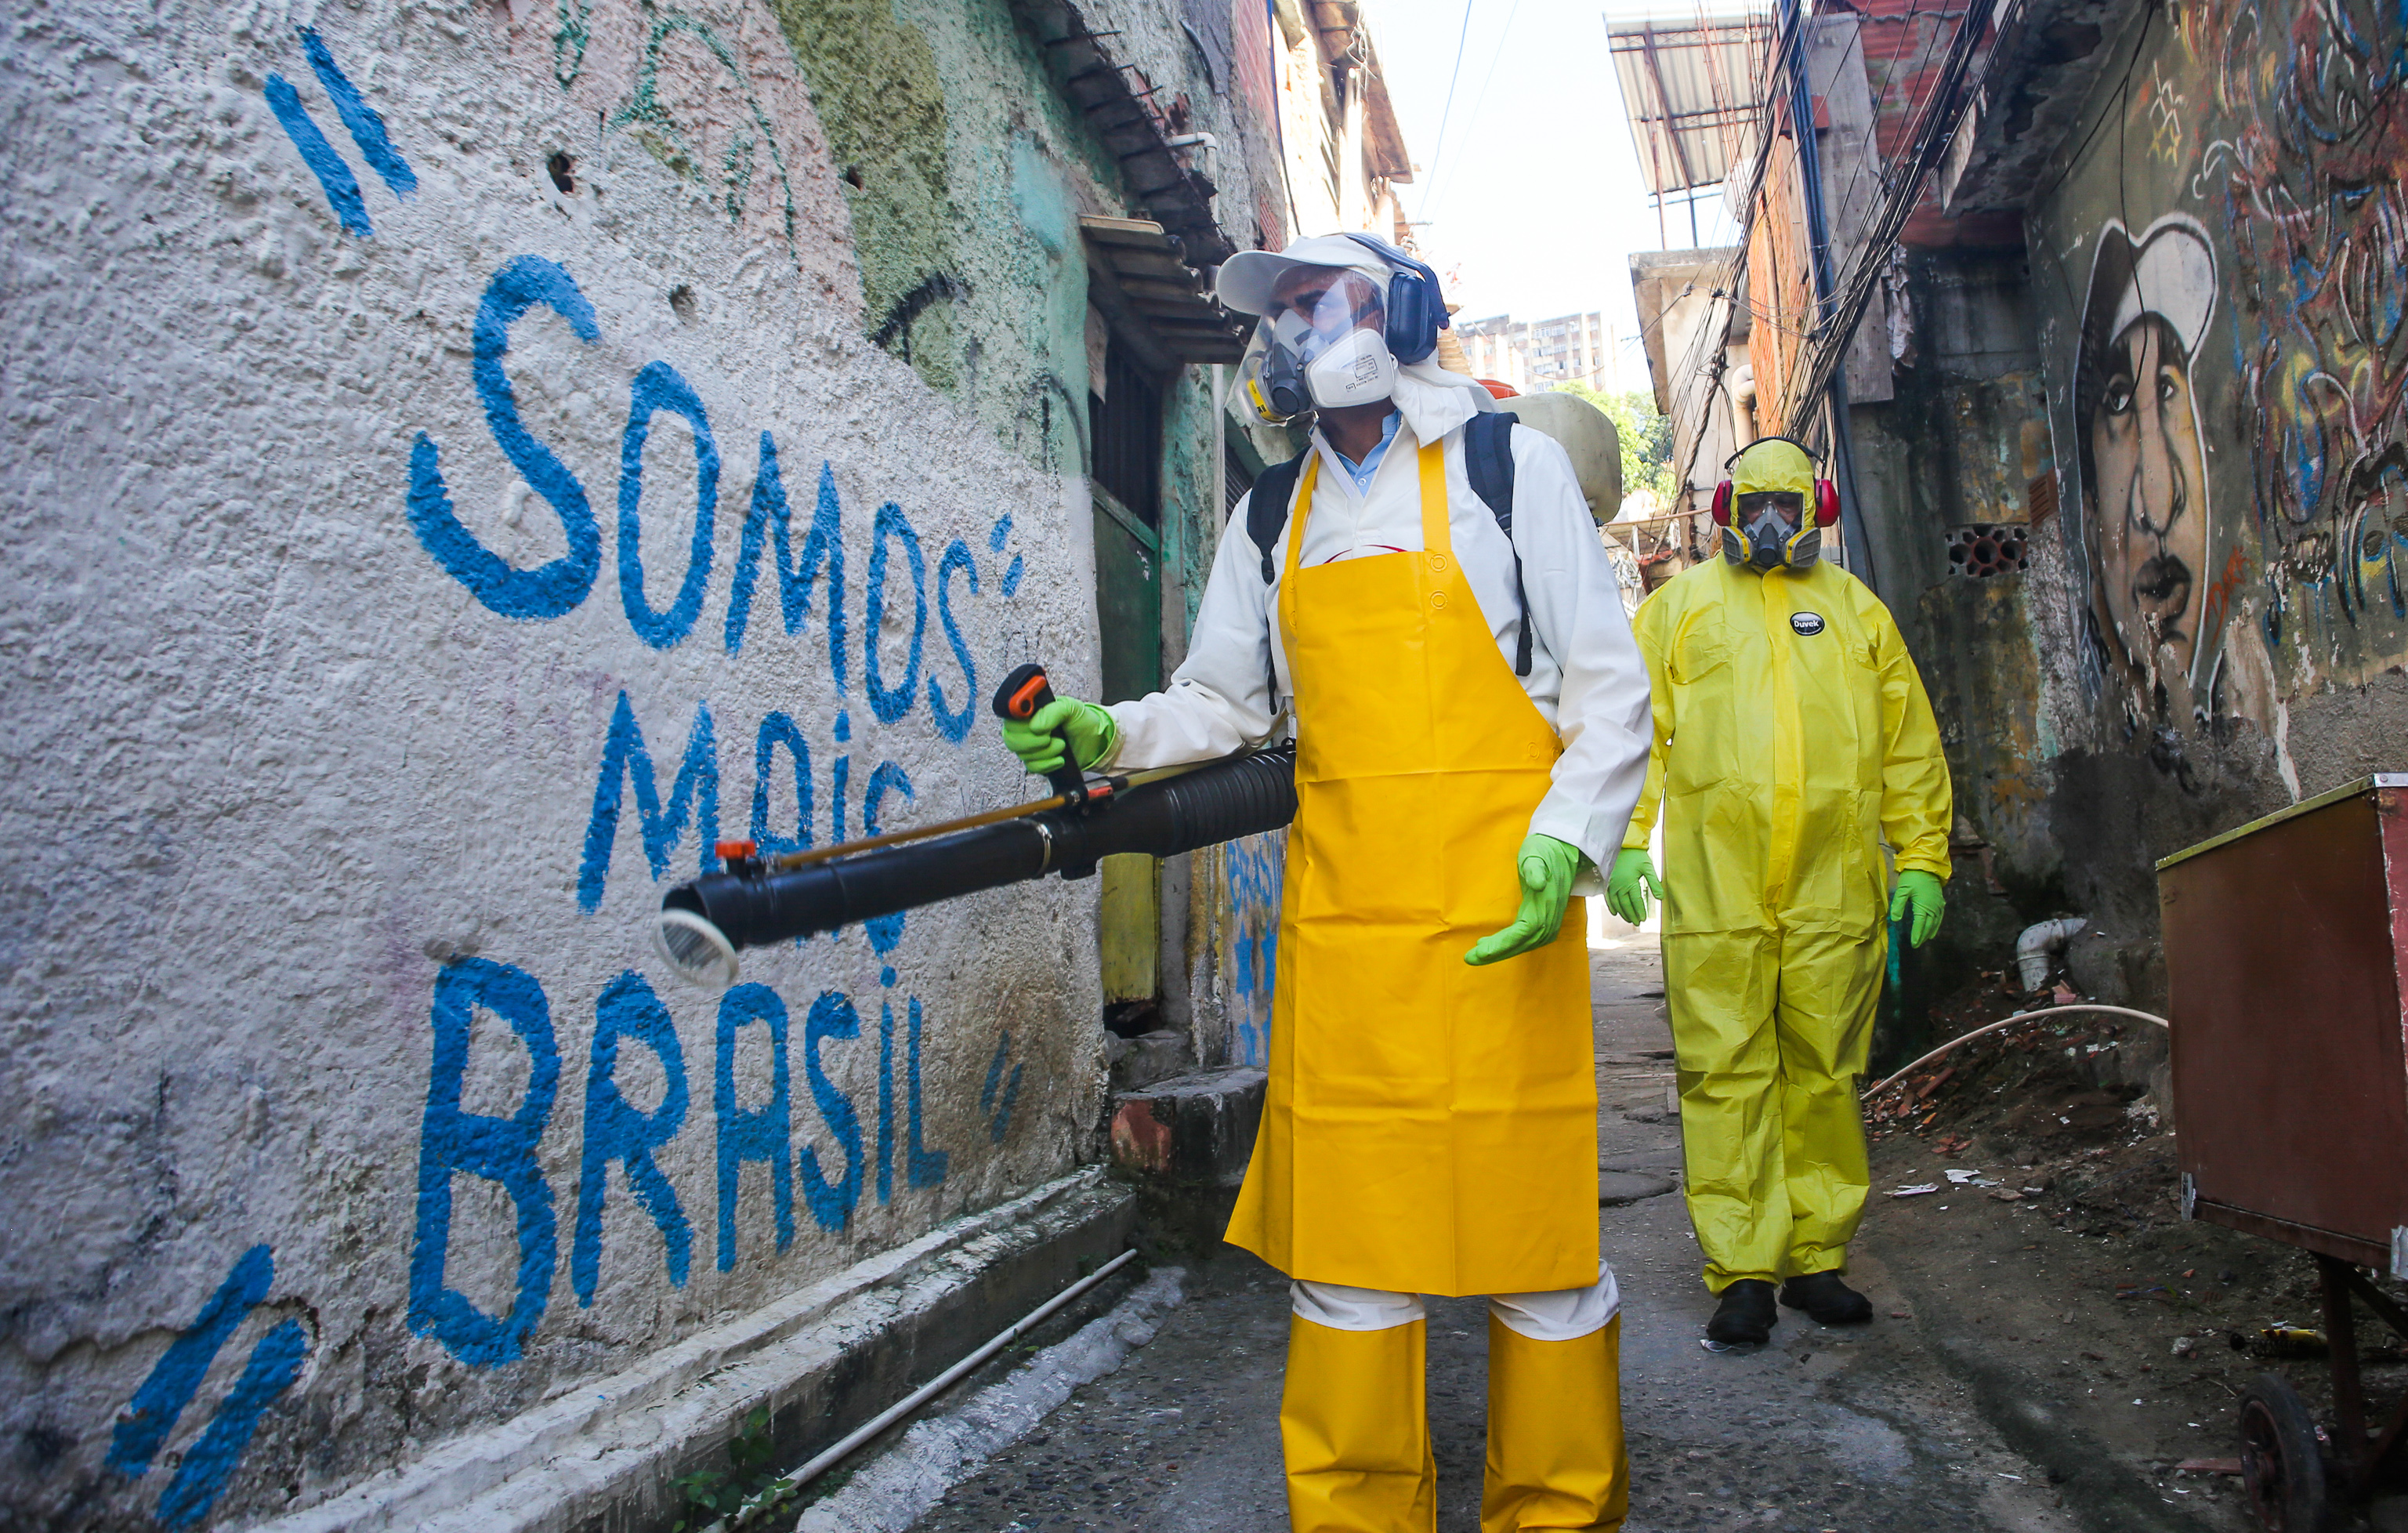 Agentes del departamento sanitario limpian calles y callejones de Vila Ipiranga Favela, en el barrio de Fonseca el 25 de marzo de 2020 en Niteroi, Brasil.